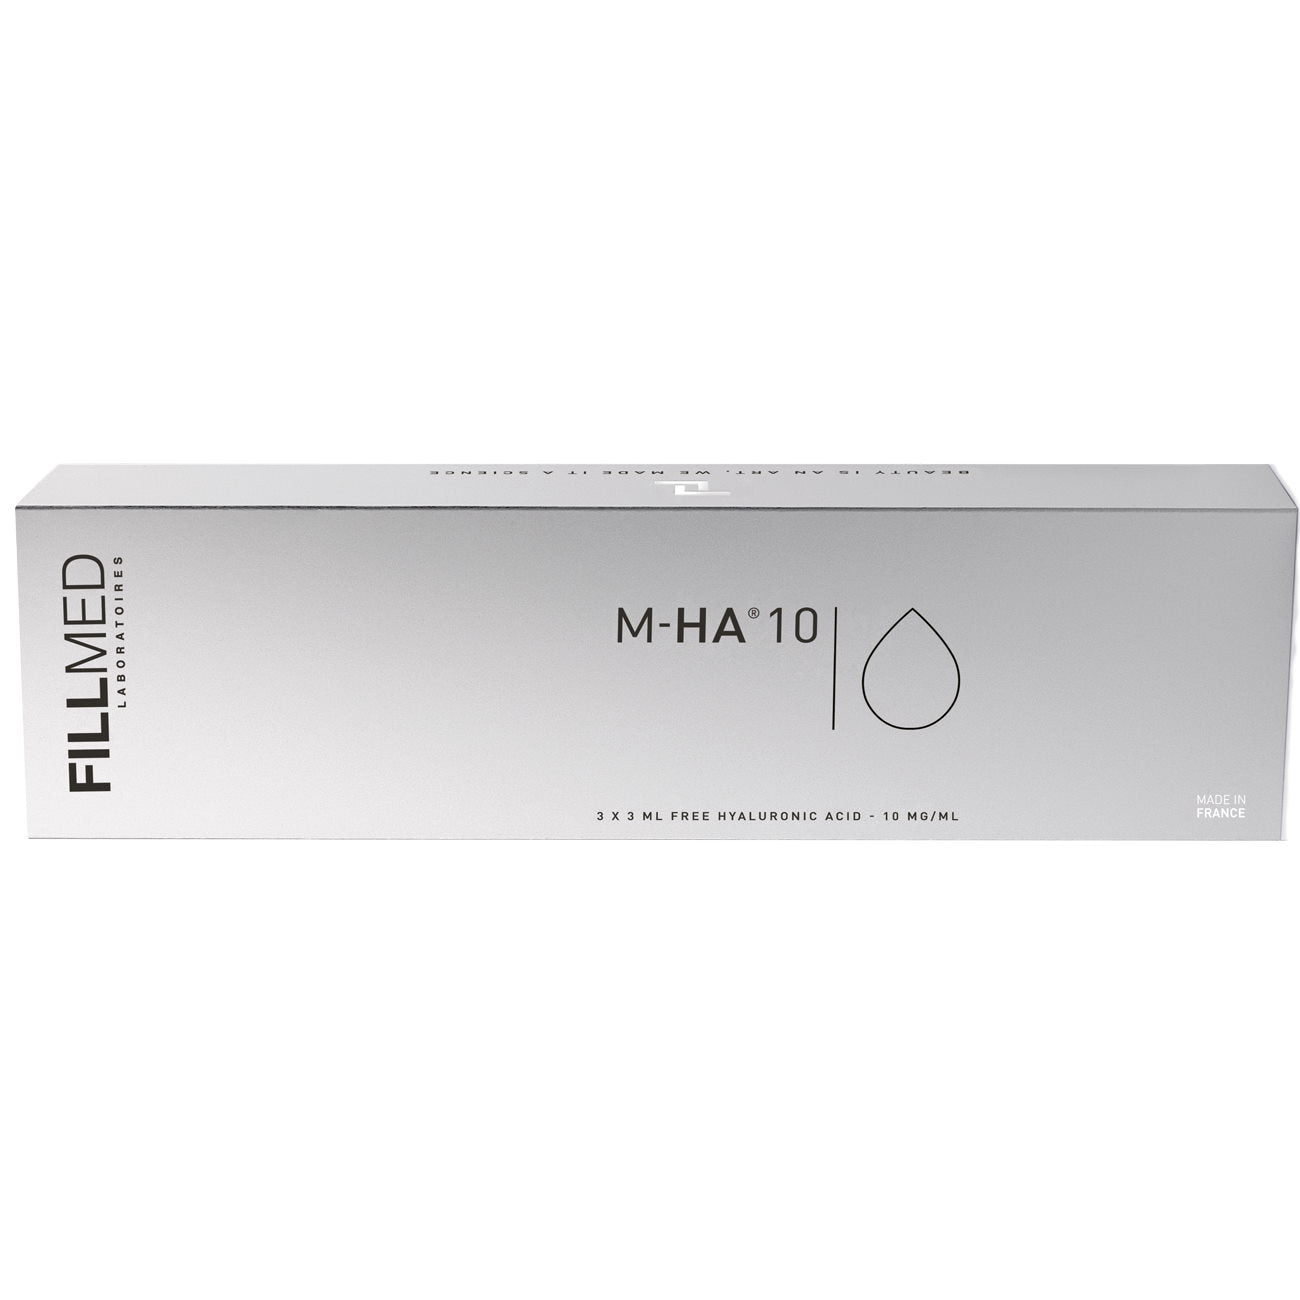 Fillmed M-HA 10
Contiene 3 siringhe da 3ml(10mg/mL).
Indicato per migliorare l'idratazione del viso, la luminosità e l'elasticità della pelle.
Zone di applicazione: viso, collo, décolleté e mani.
Profondità di iniezione: derma superiore.